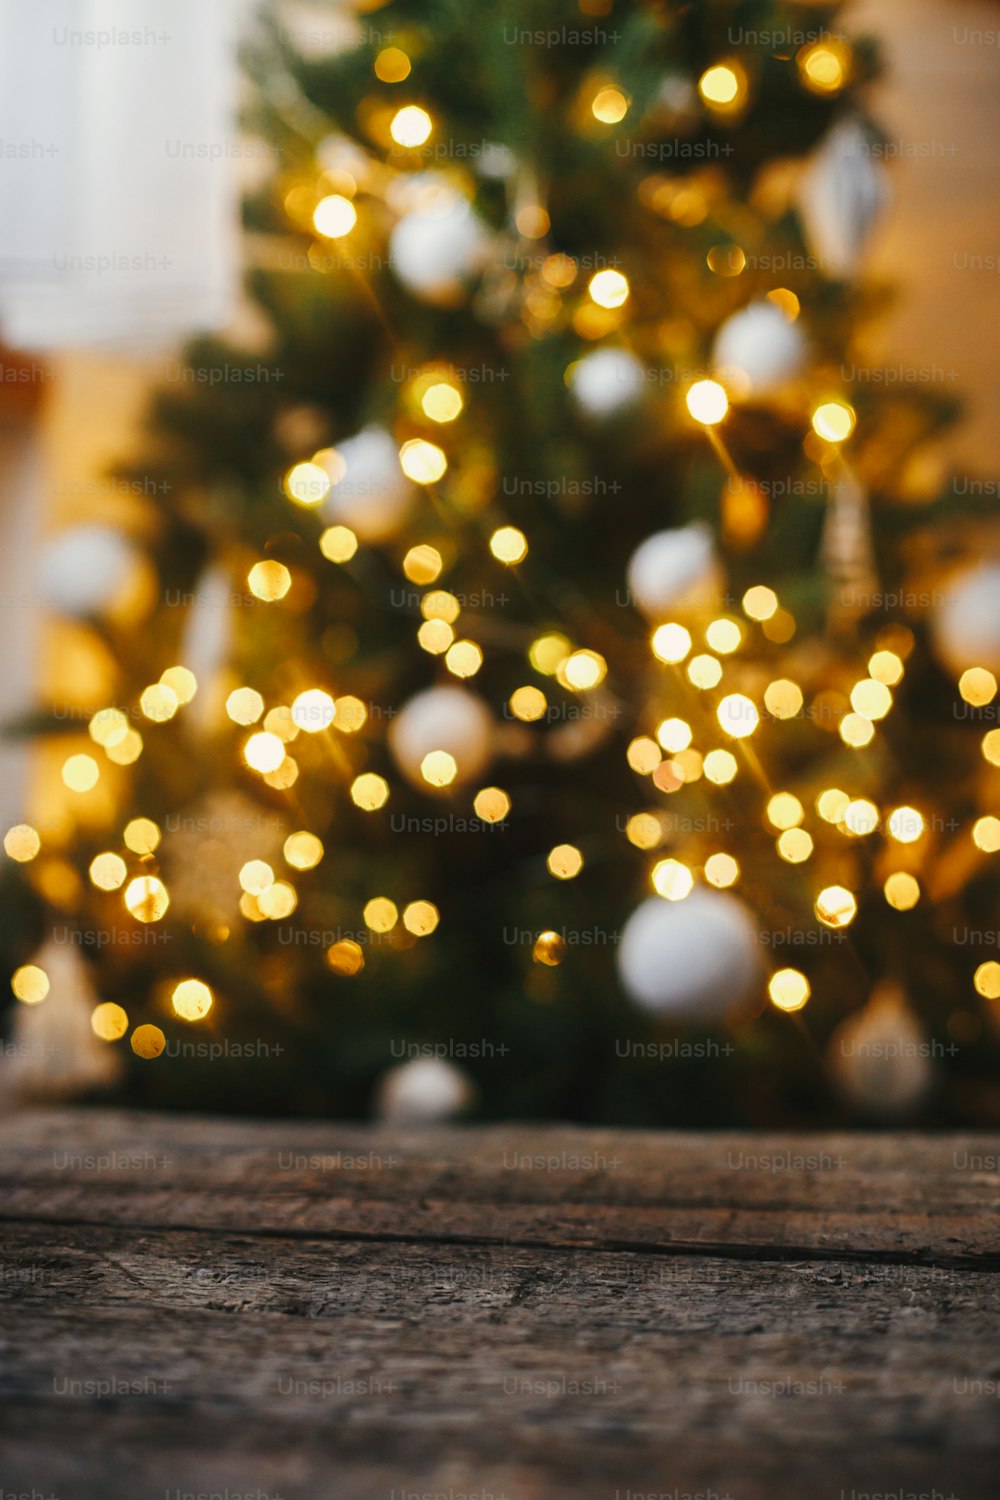 Fondo de Navidad. Madera rústica sobre fondo de luces de árbol de navidad bokeh dorado. Espacio para el texto. Árbol decorado que brilla en una sala escandinava festiva. Nochebuena atmosférica. Felices Fiestas